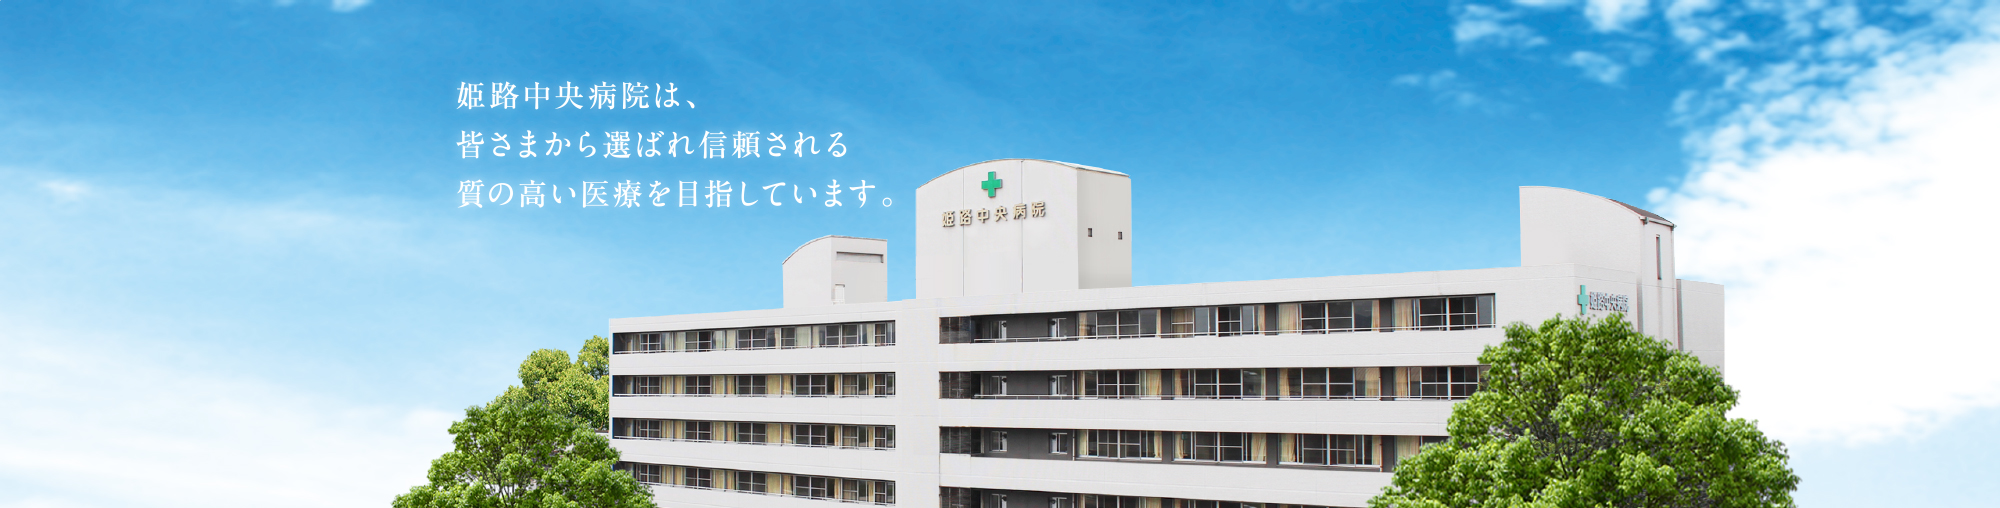 姫路中央病院は、皆さまから慕われ信頼される質の高い医療を目指しています。